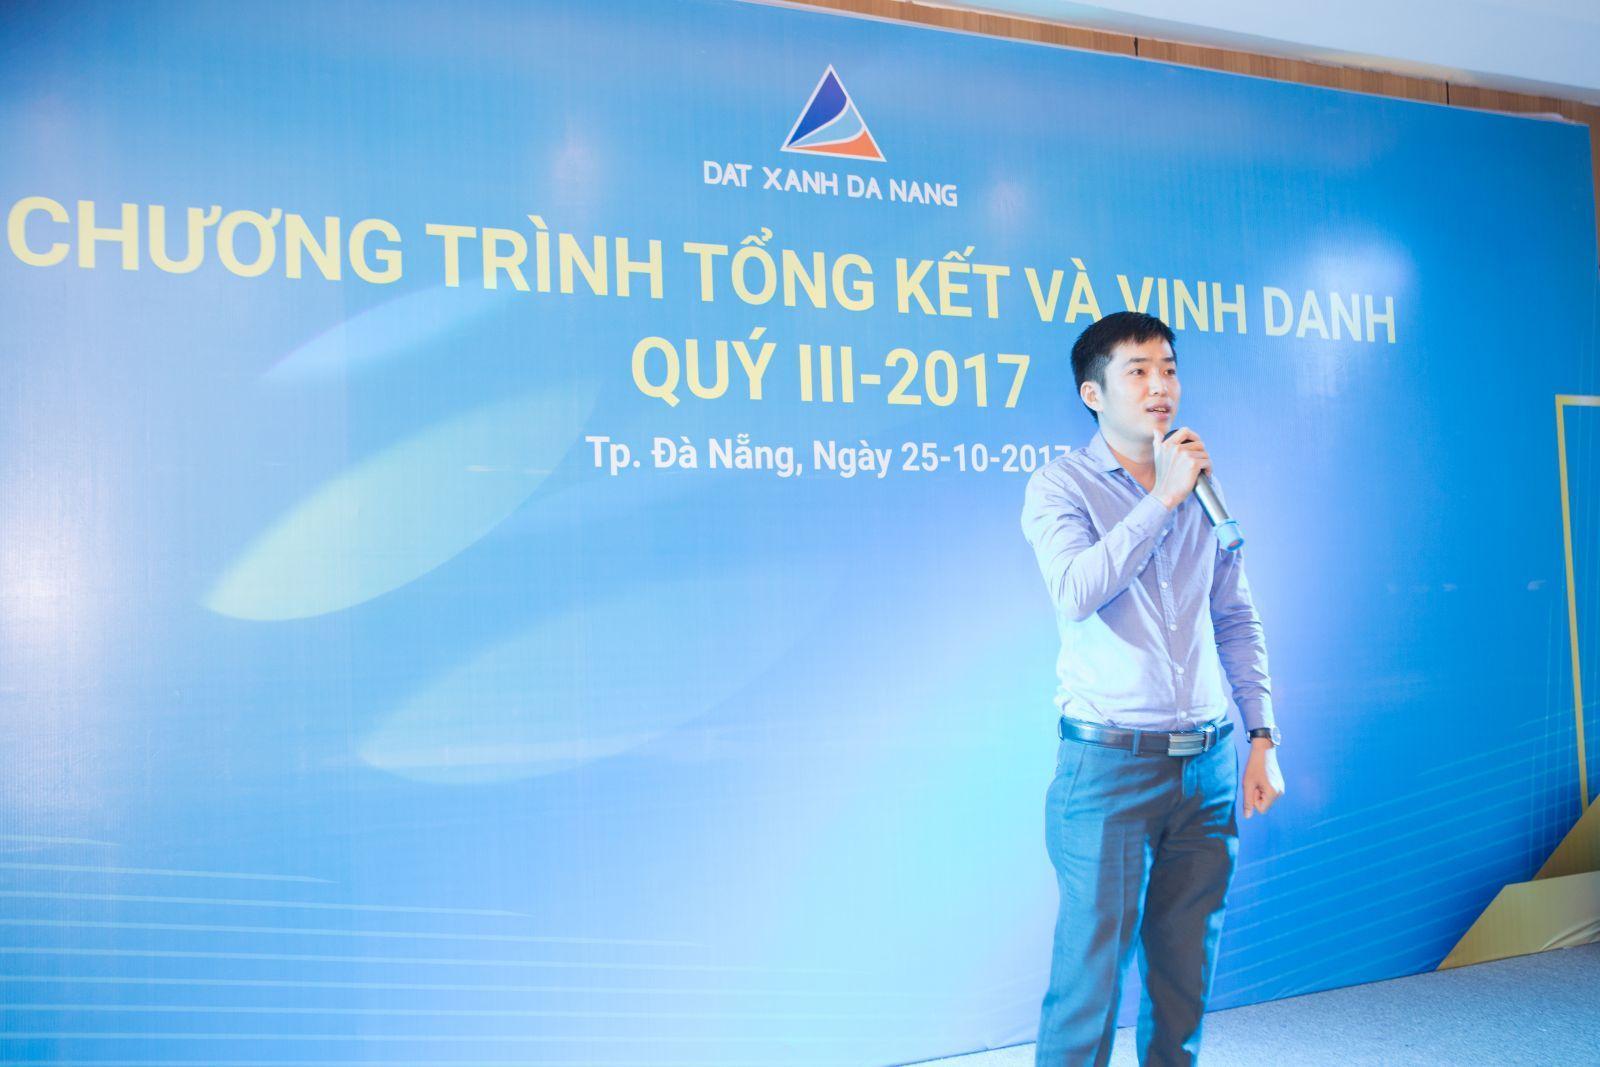 LỄ TỔNG KẾT VÀ VINH DANH QUÝ III/2017 - Viet Nam Smart City